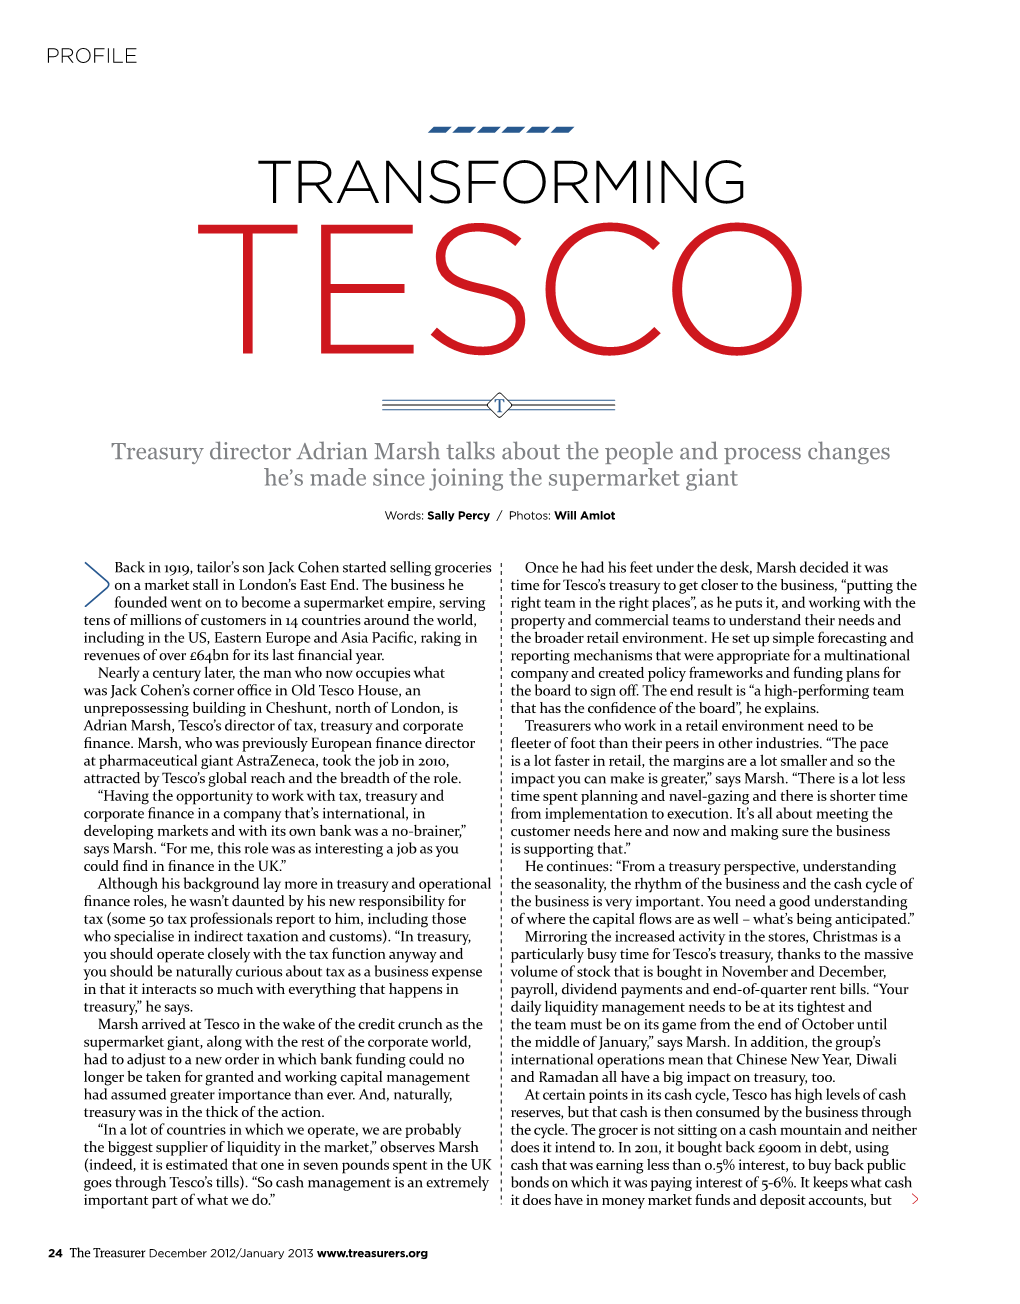 Transforming Tesco